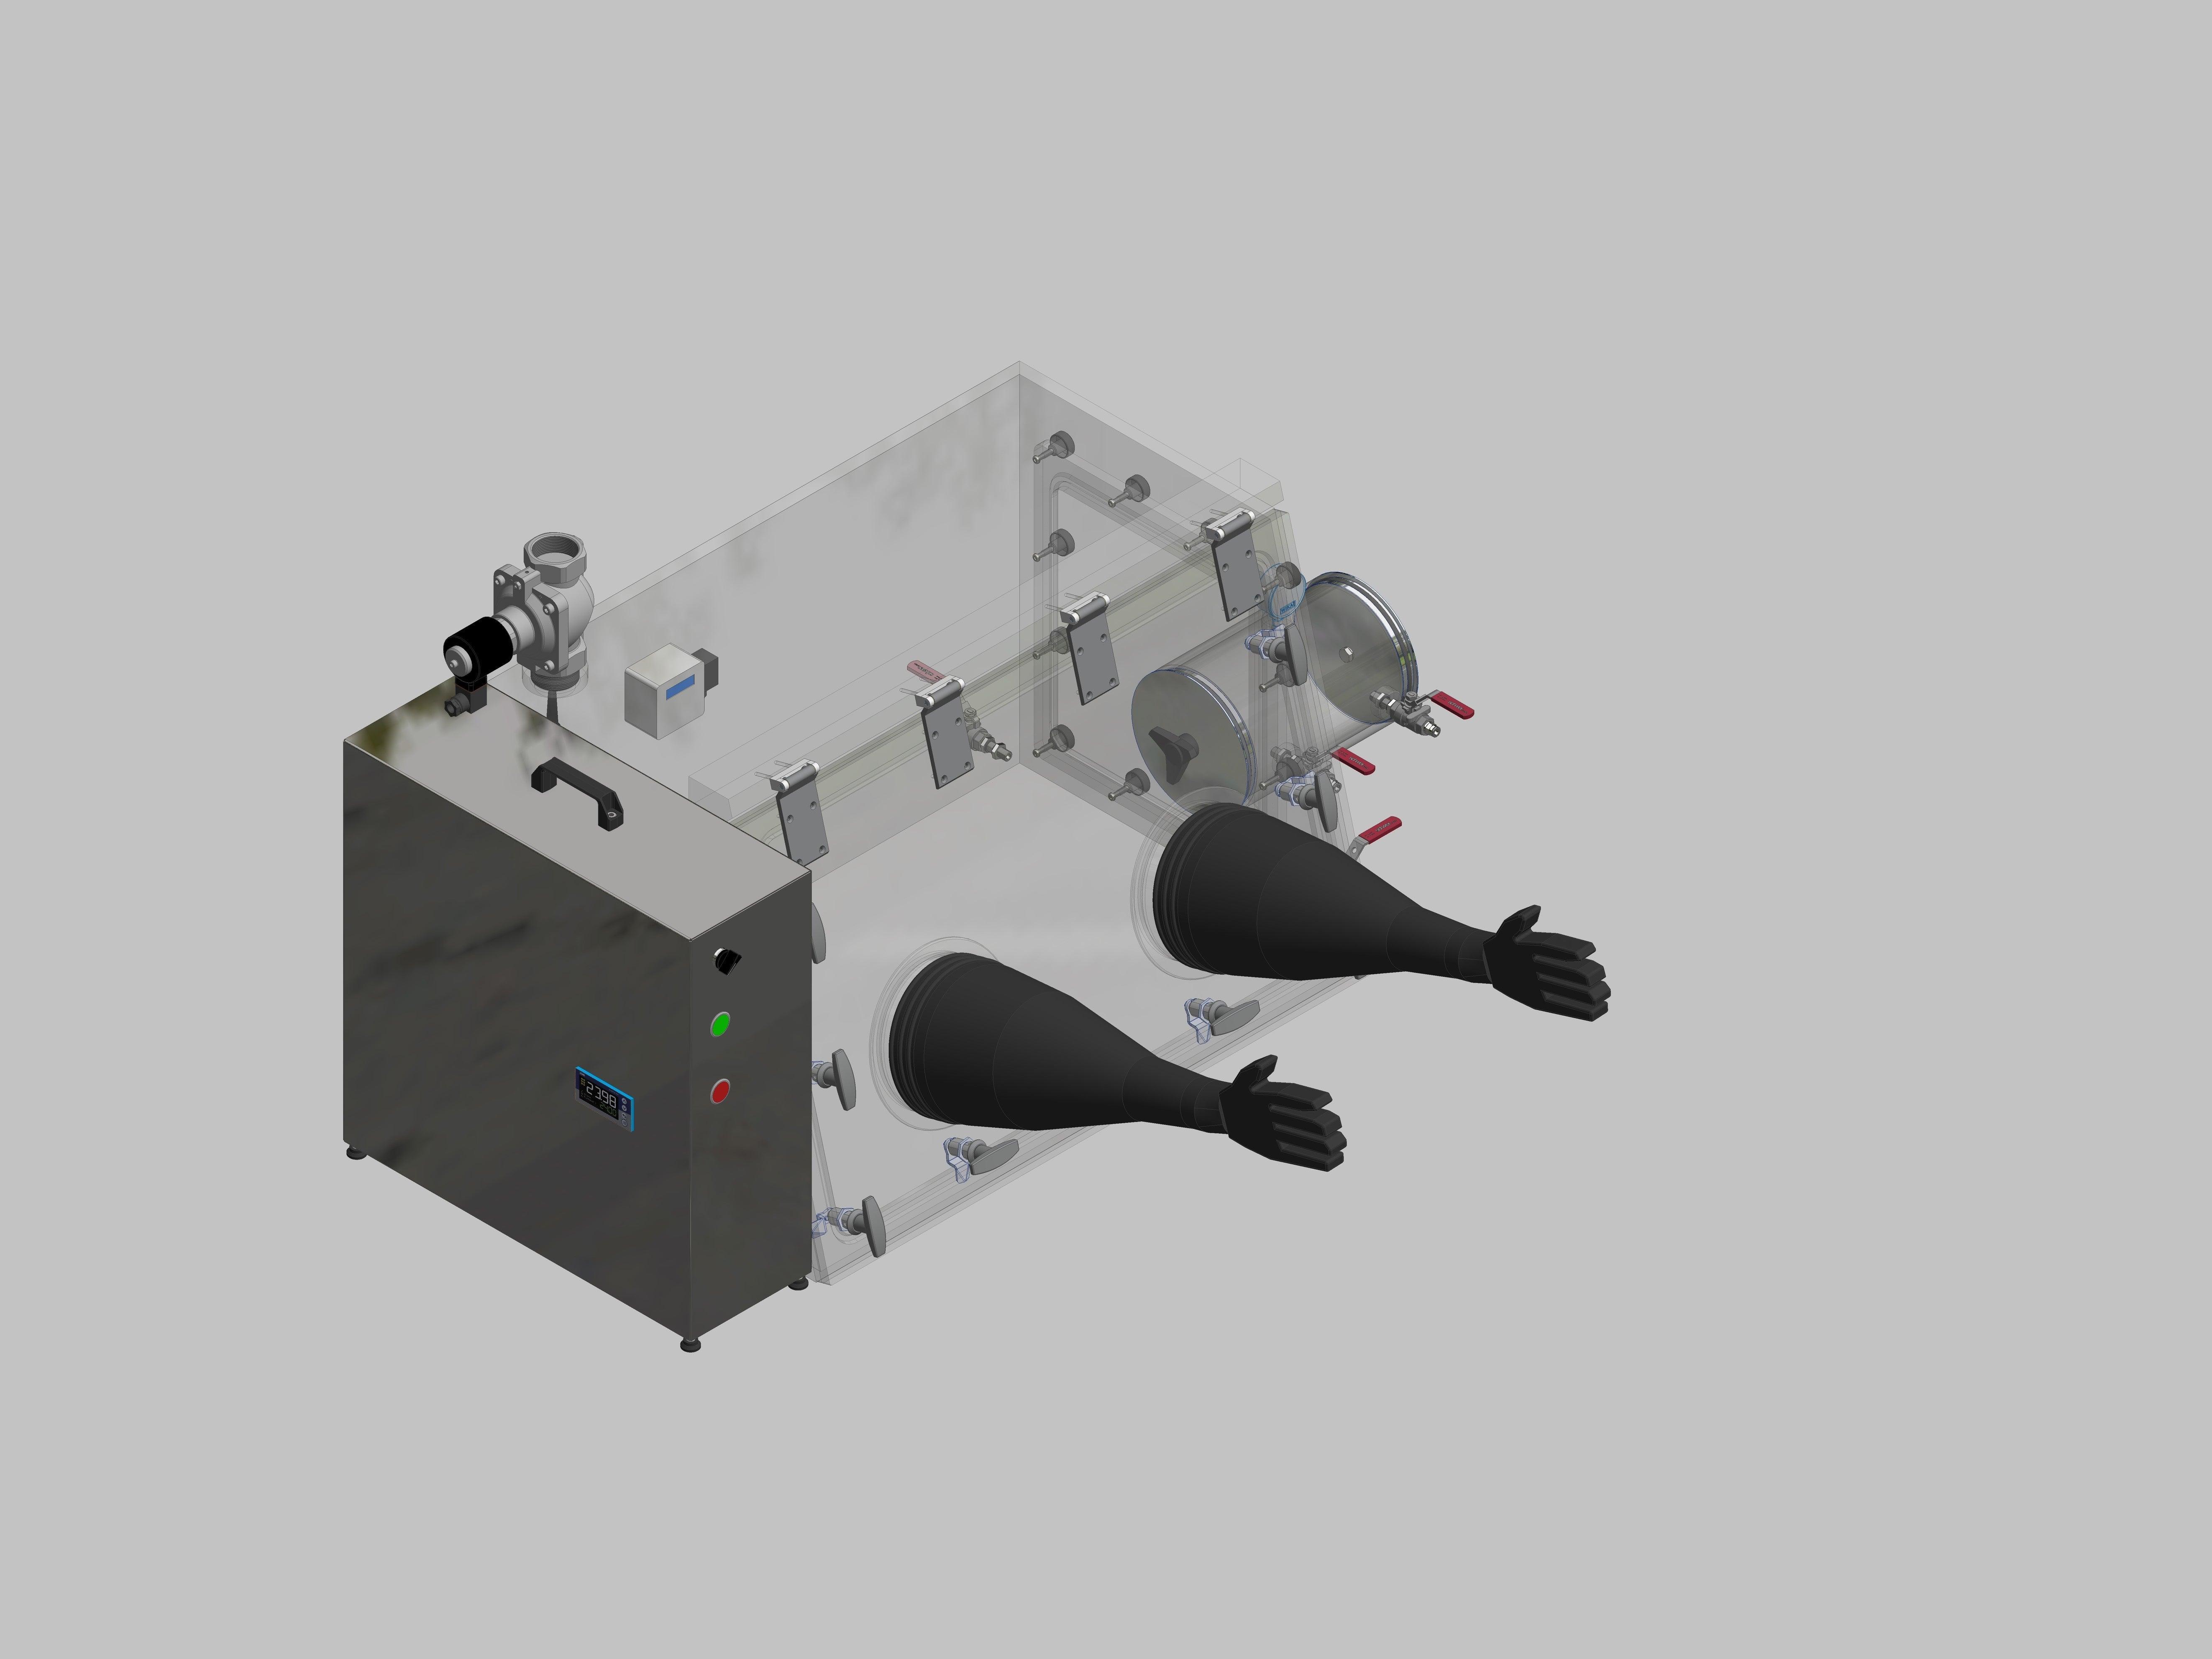 Glovebox aus Acryl> Gasbefüllung: Spülautomatik mit Druckregelung, Frontausführung: Schwenkbar nach oben, Seitenausführung: Vakuumschleuse rund, Steuerung: Sauerstoffregler